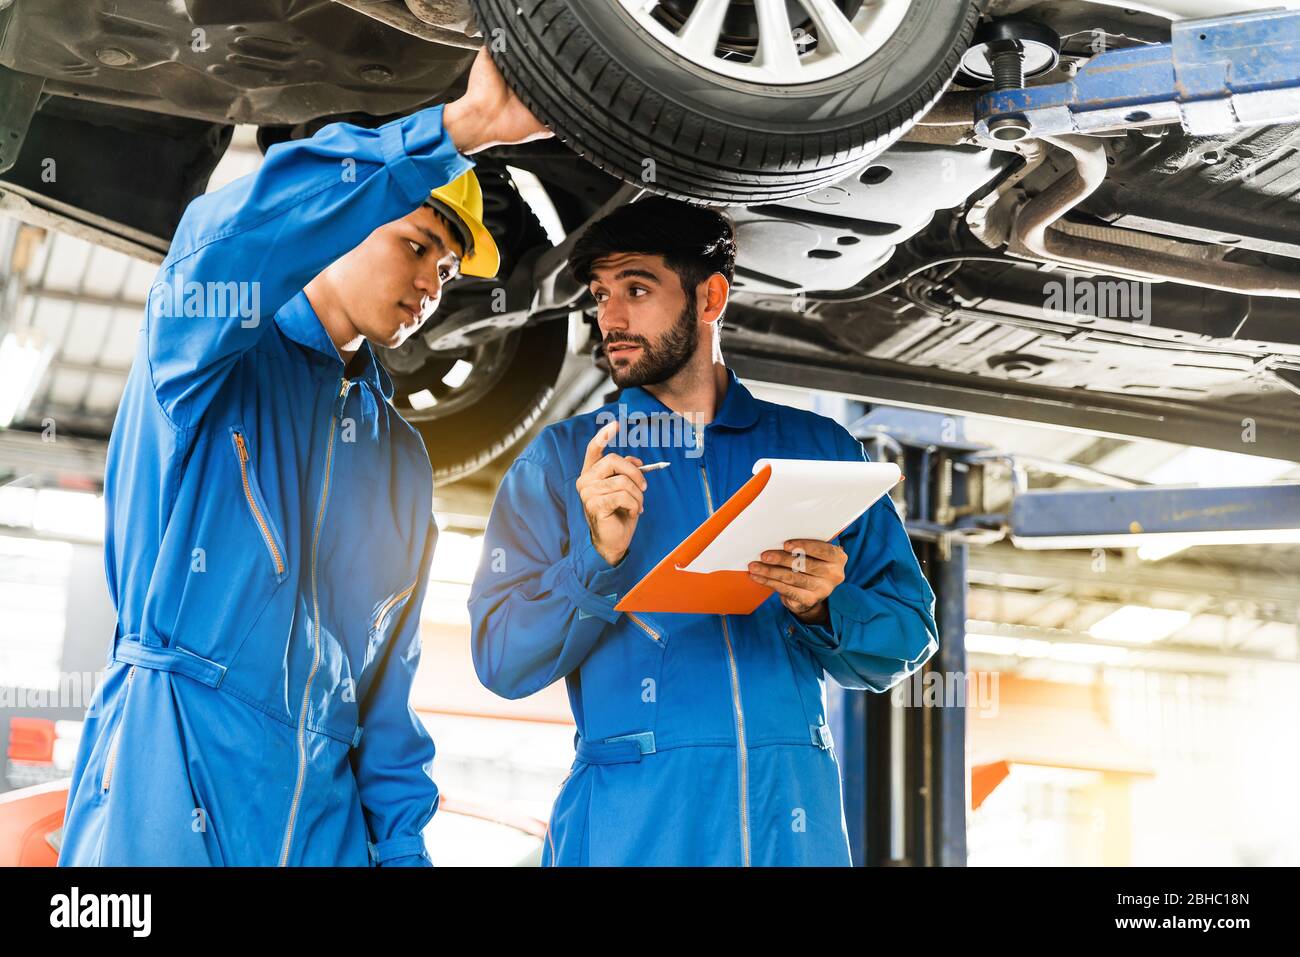 Mecánico en azul el uniforme del desgaste del trabajo inspecciona el fondo del coche con su ayudante. Servicio de reparación de automóviles, Trabajo en equipo profesional. Foto de stock